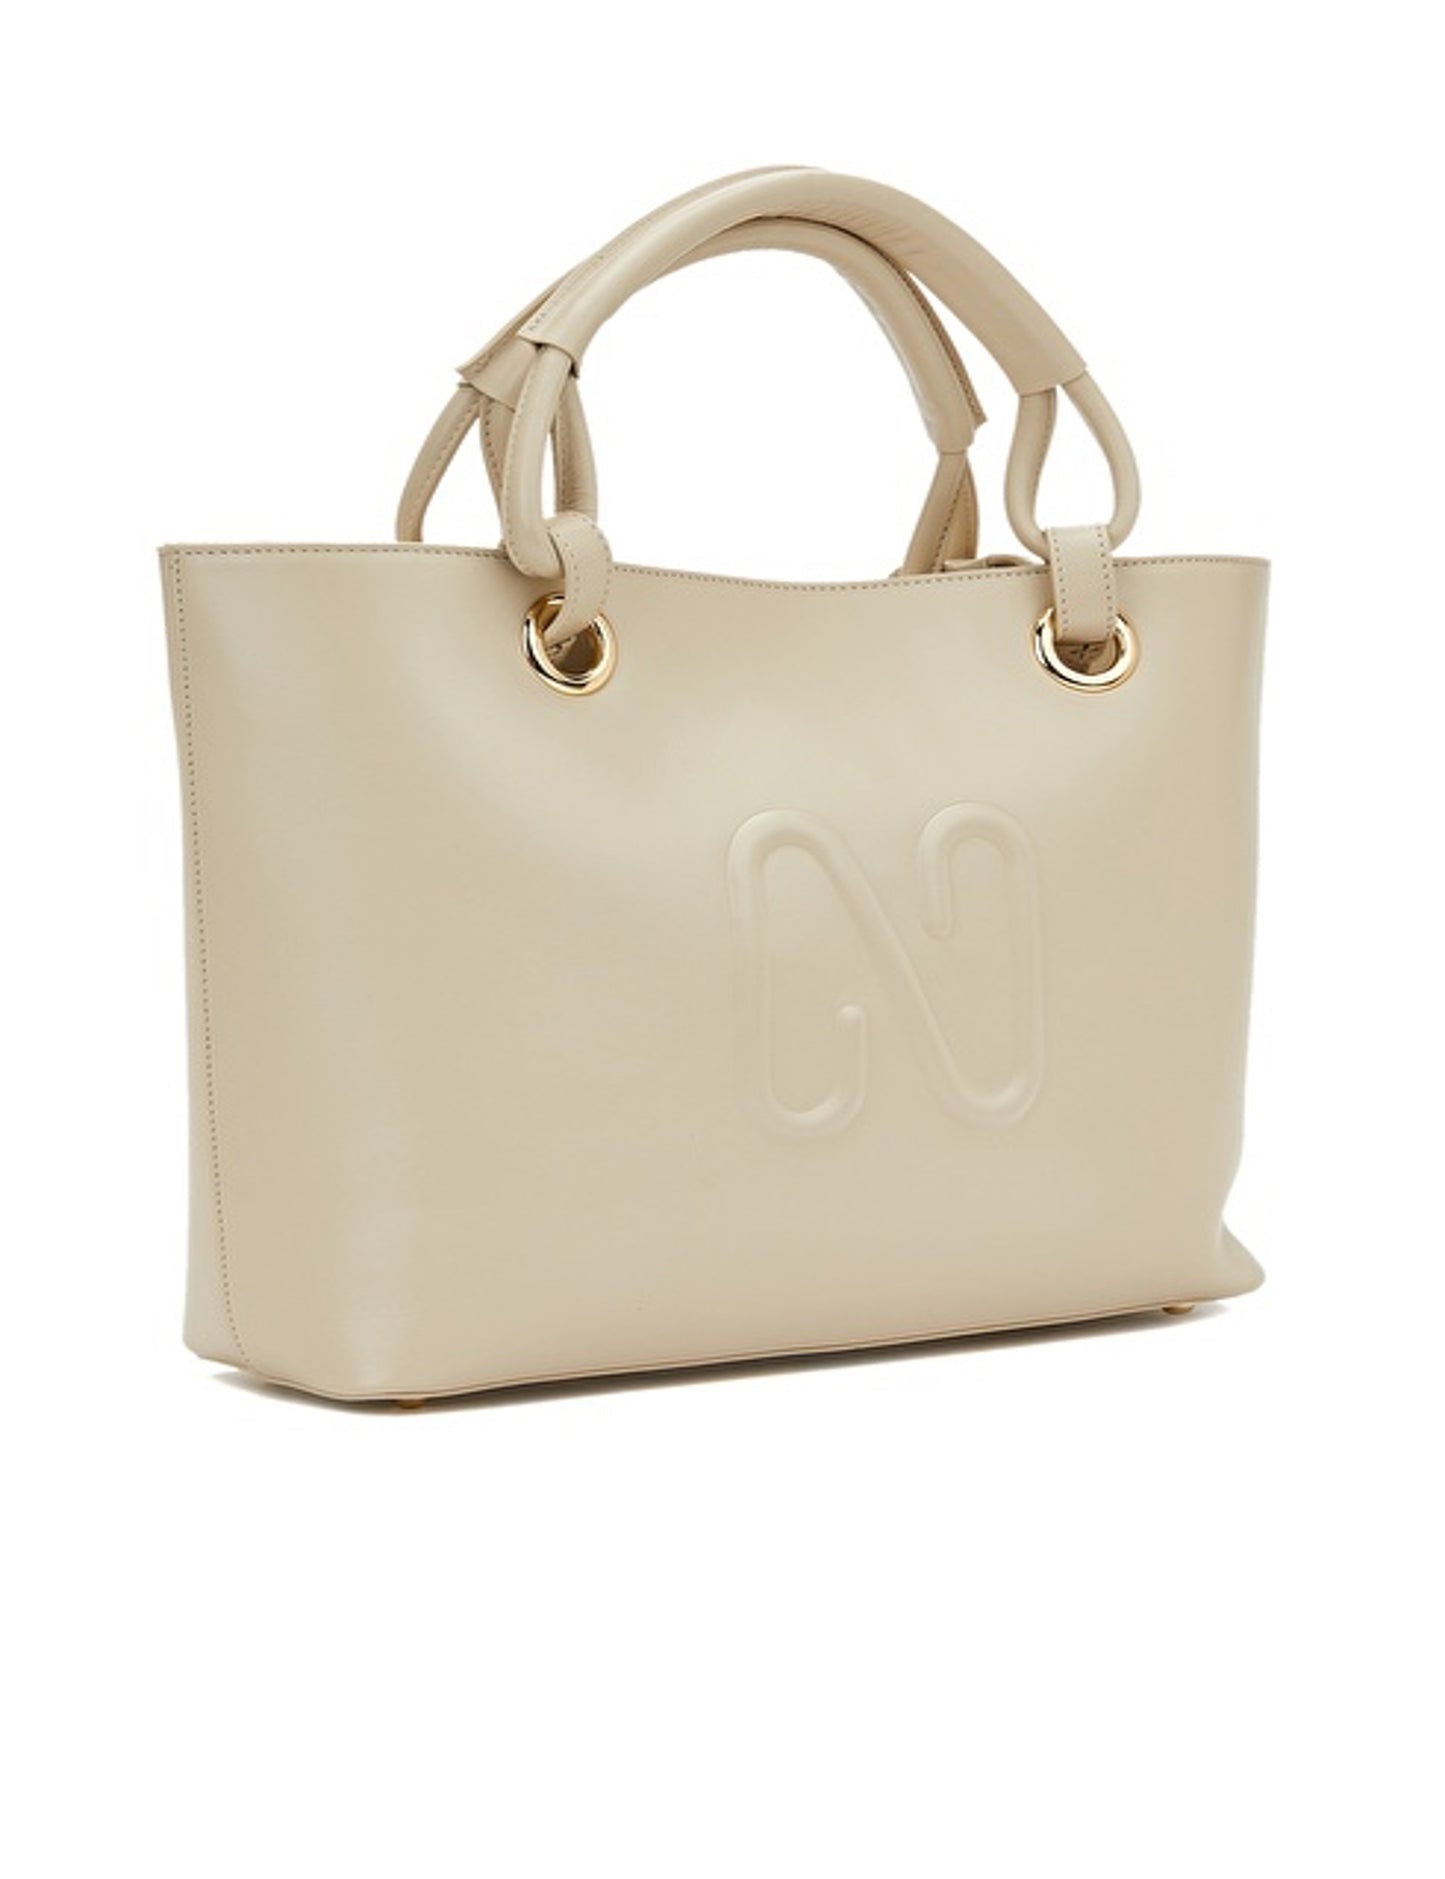 Woman Handbag 100% Leather Bag Cream Color